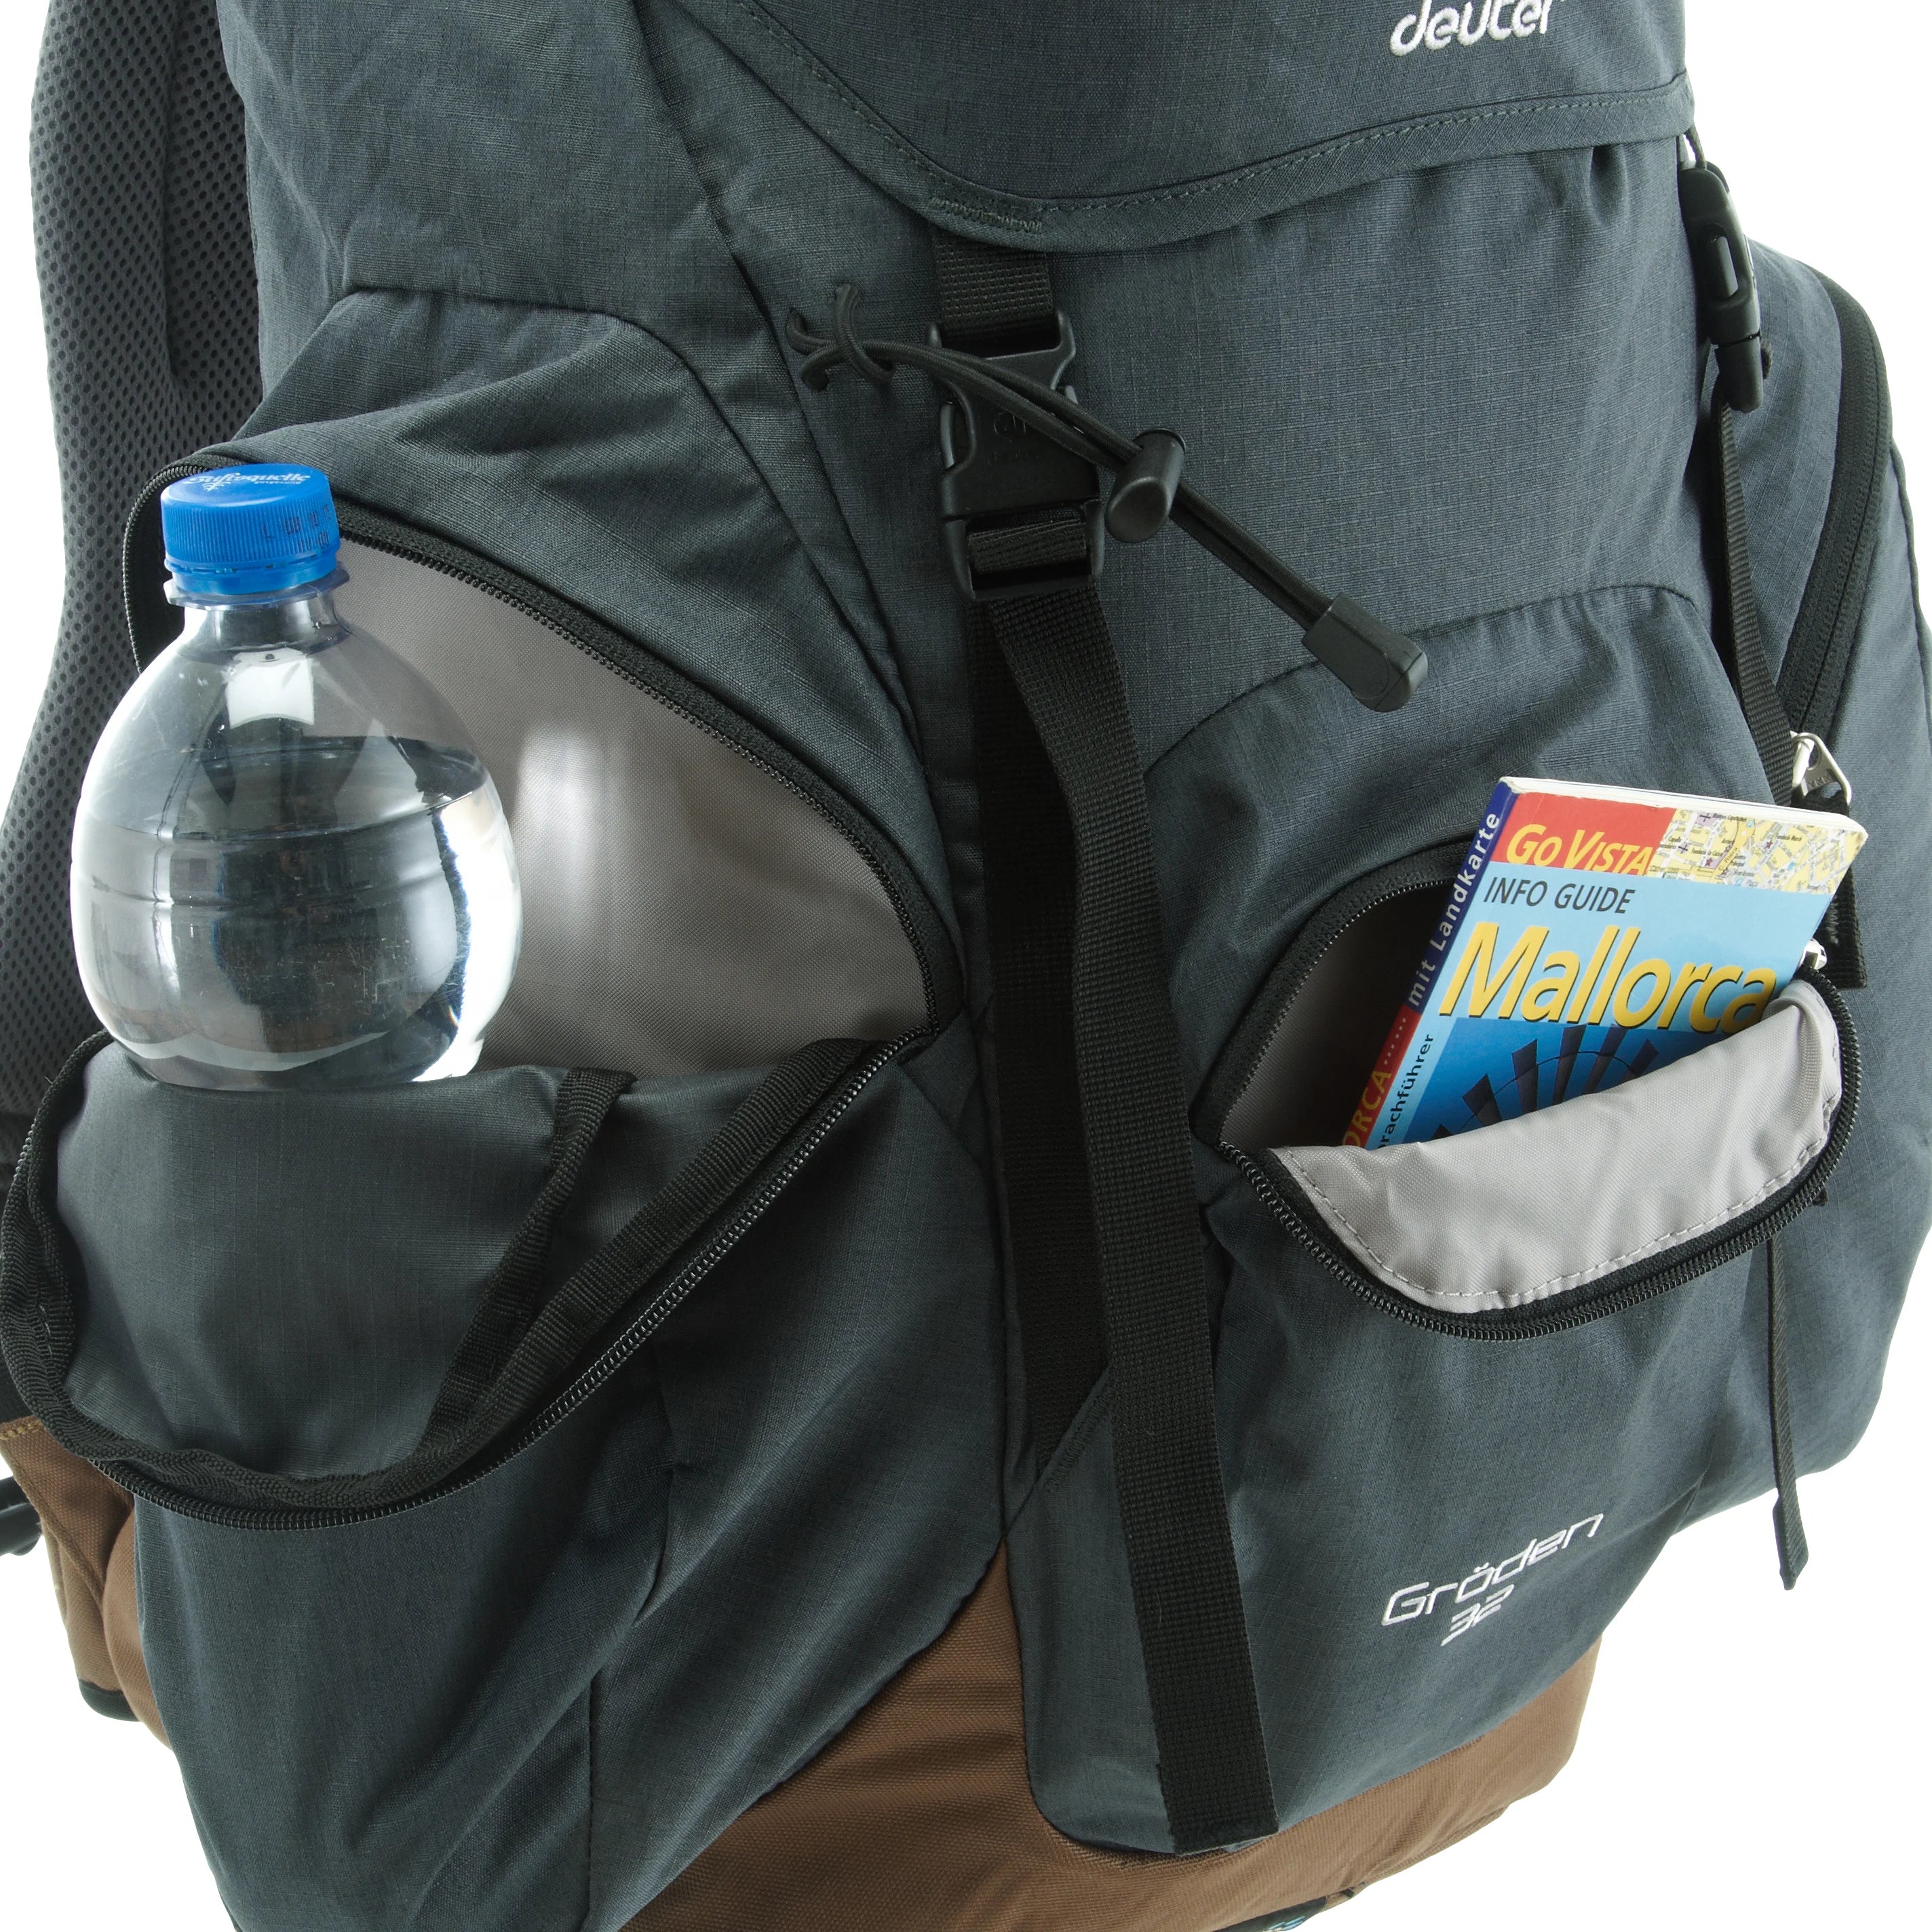 Deuter Travel Gröden 32 hiking backpack 55 cm - atlantic-ink